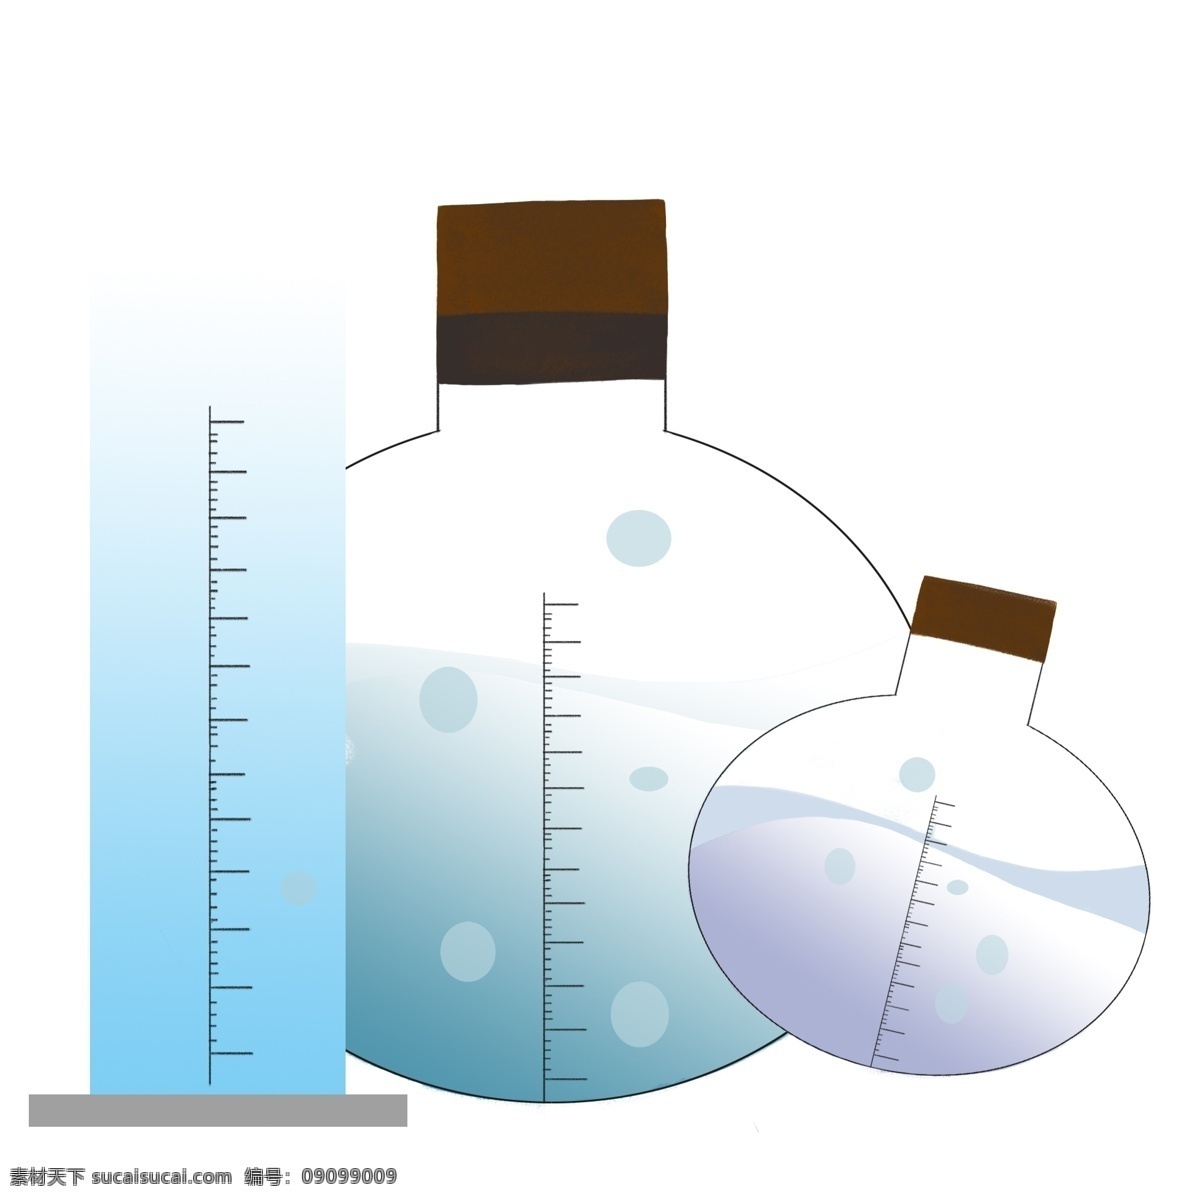 化学实验 用品 插图 实验瓶子 化学瓶子 化学用品 容器 棕色的木塞 刻度瓶子 蓝色的液体 实验工具